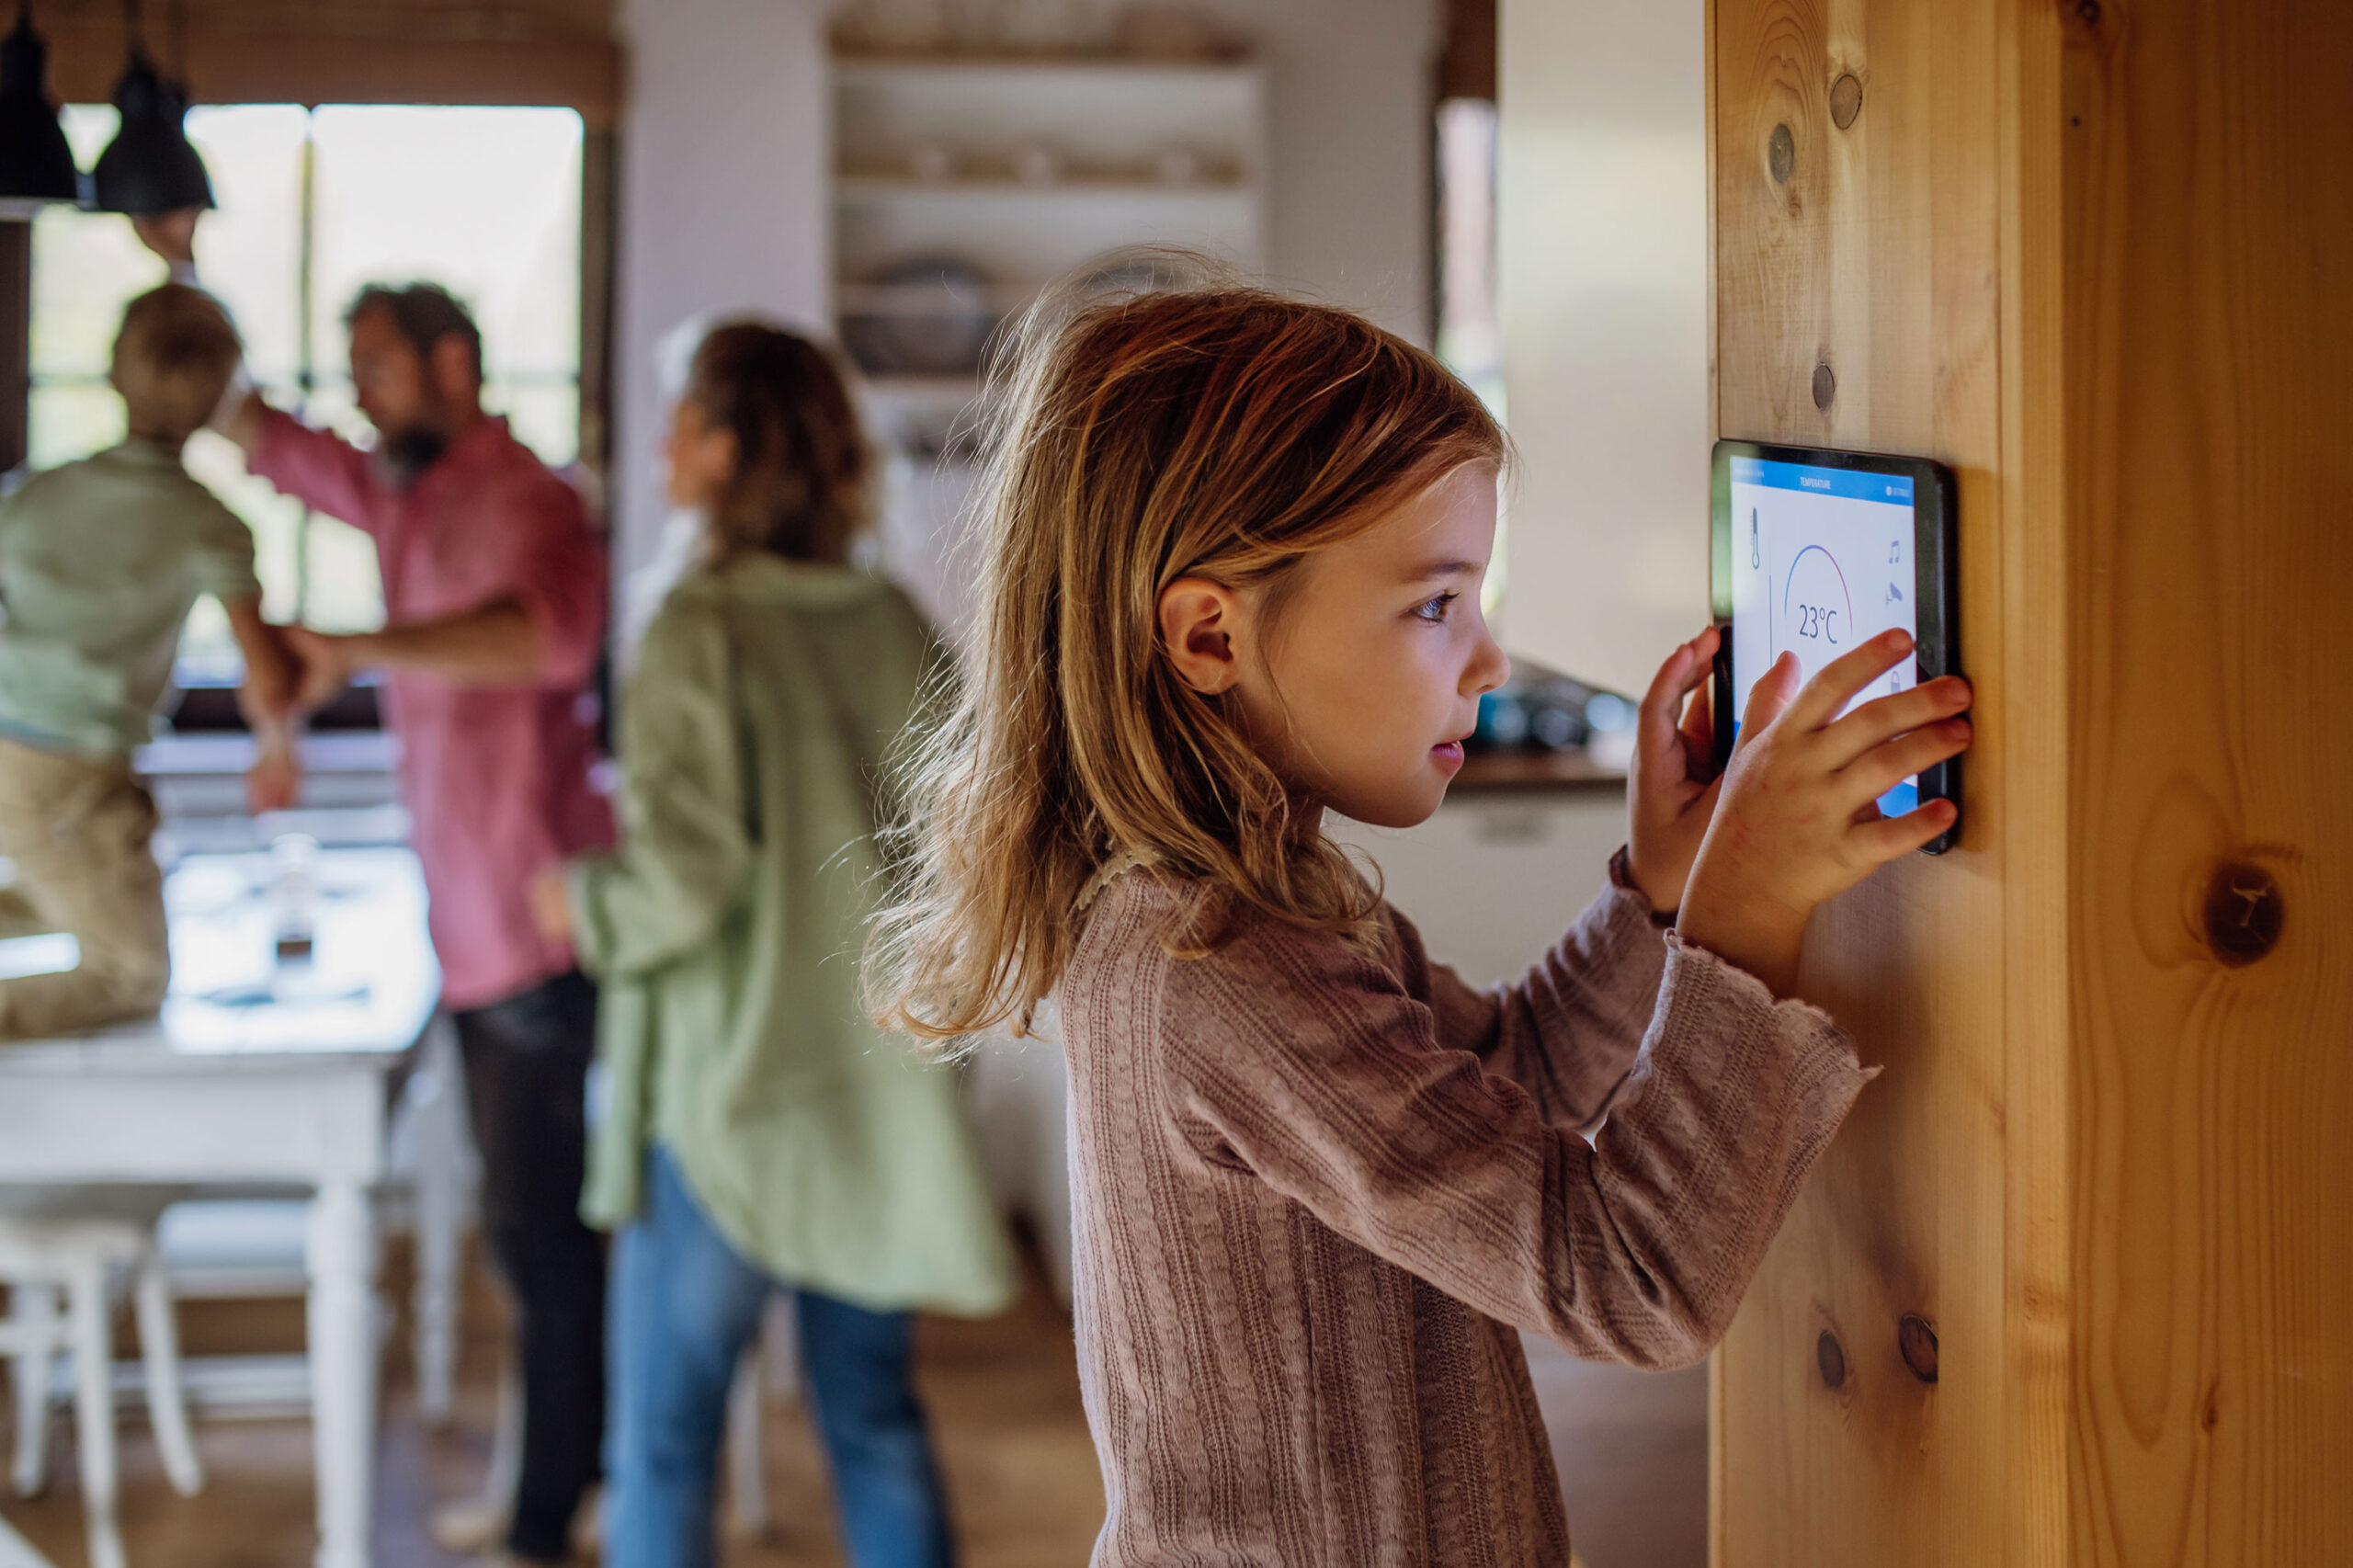 Kinderleichte Bedienung der Heizanlage durch Smart-Home Integration